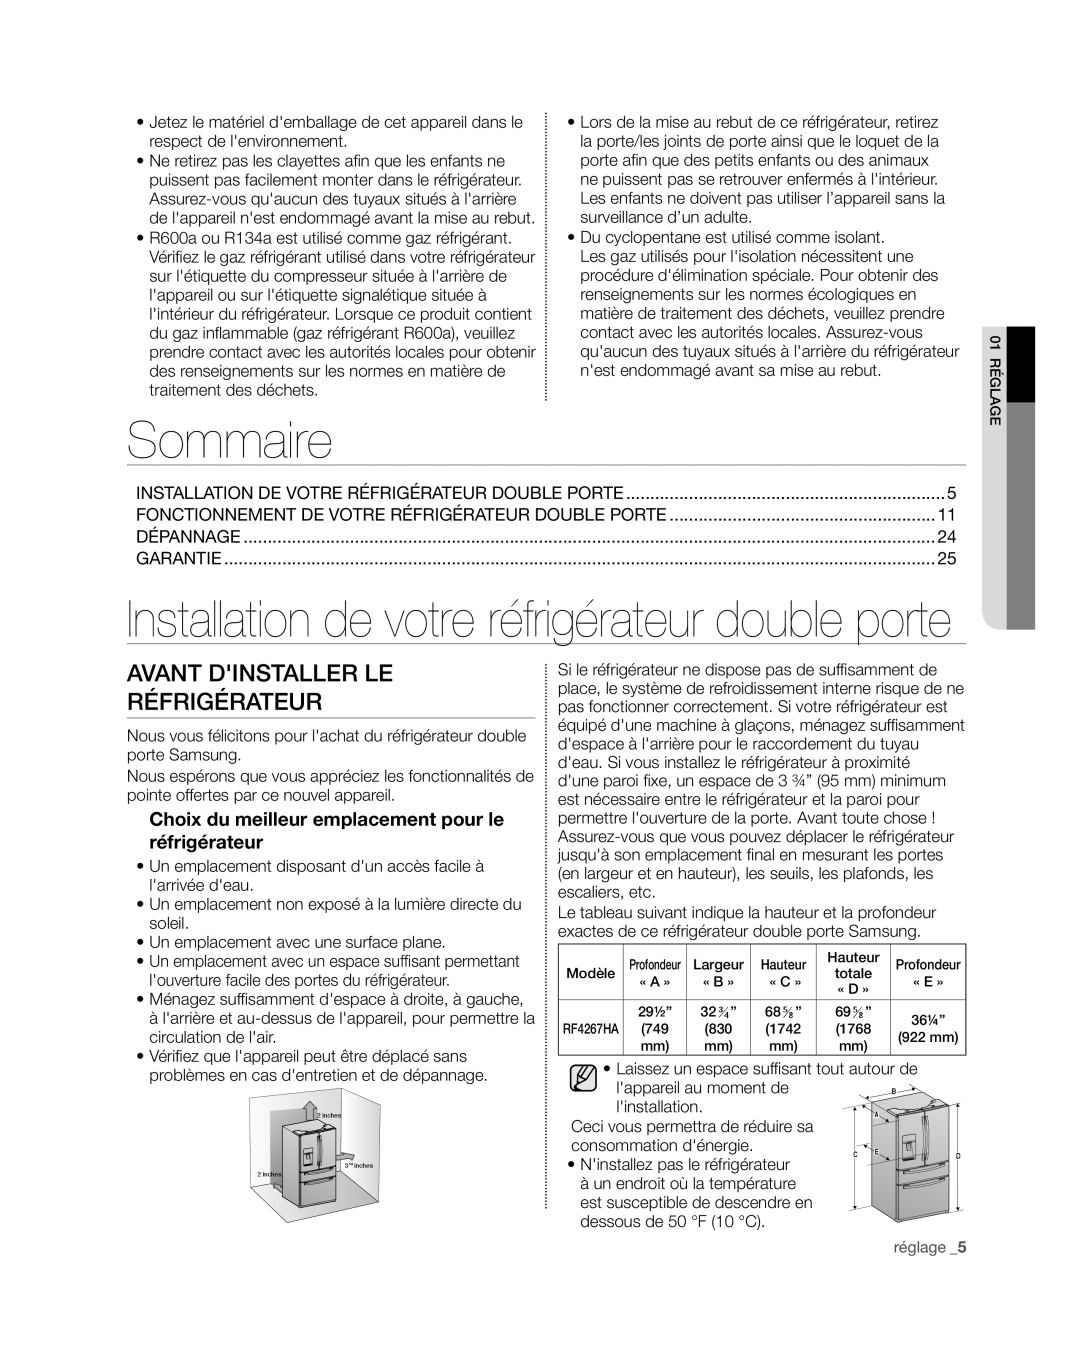 Samsung RF4267HA user manual Sommaire, Avant dinstaller le réfrigérateur, Installation de votre réfrigérateur double porte 